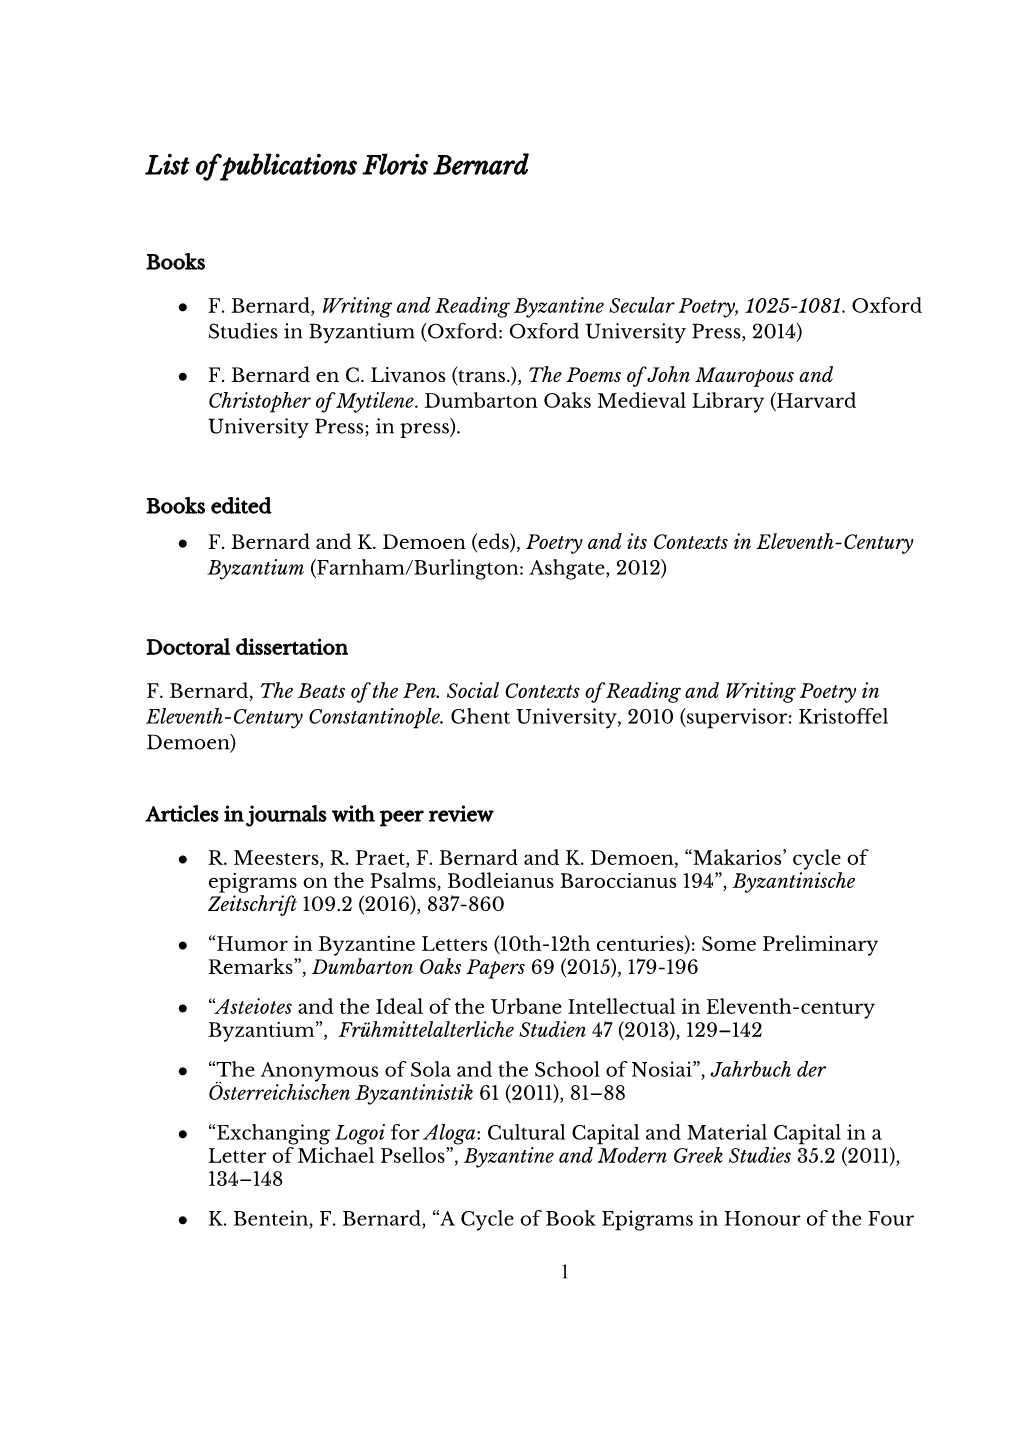 List of Publications Floris Bernard